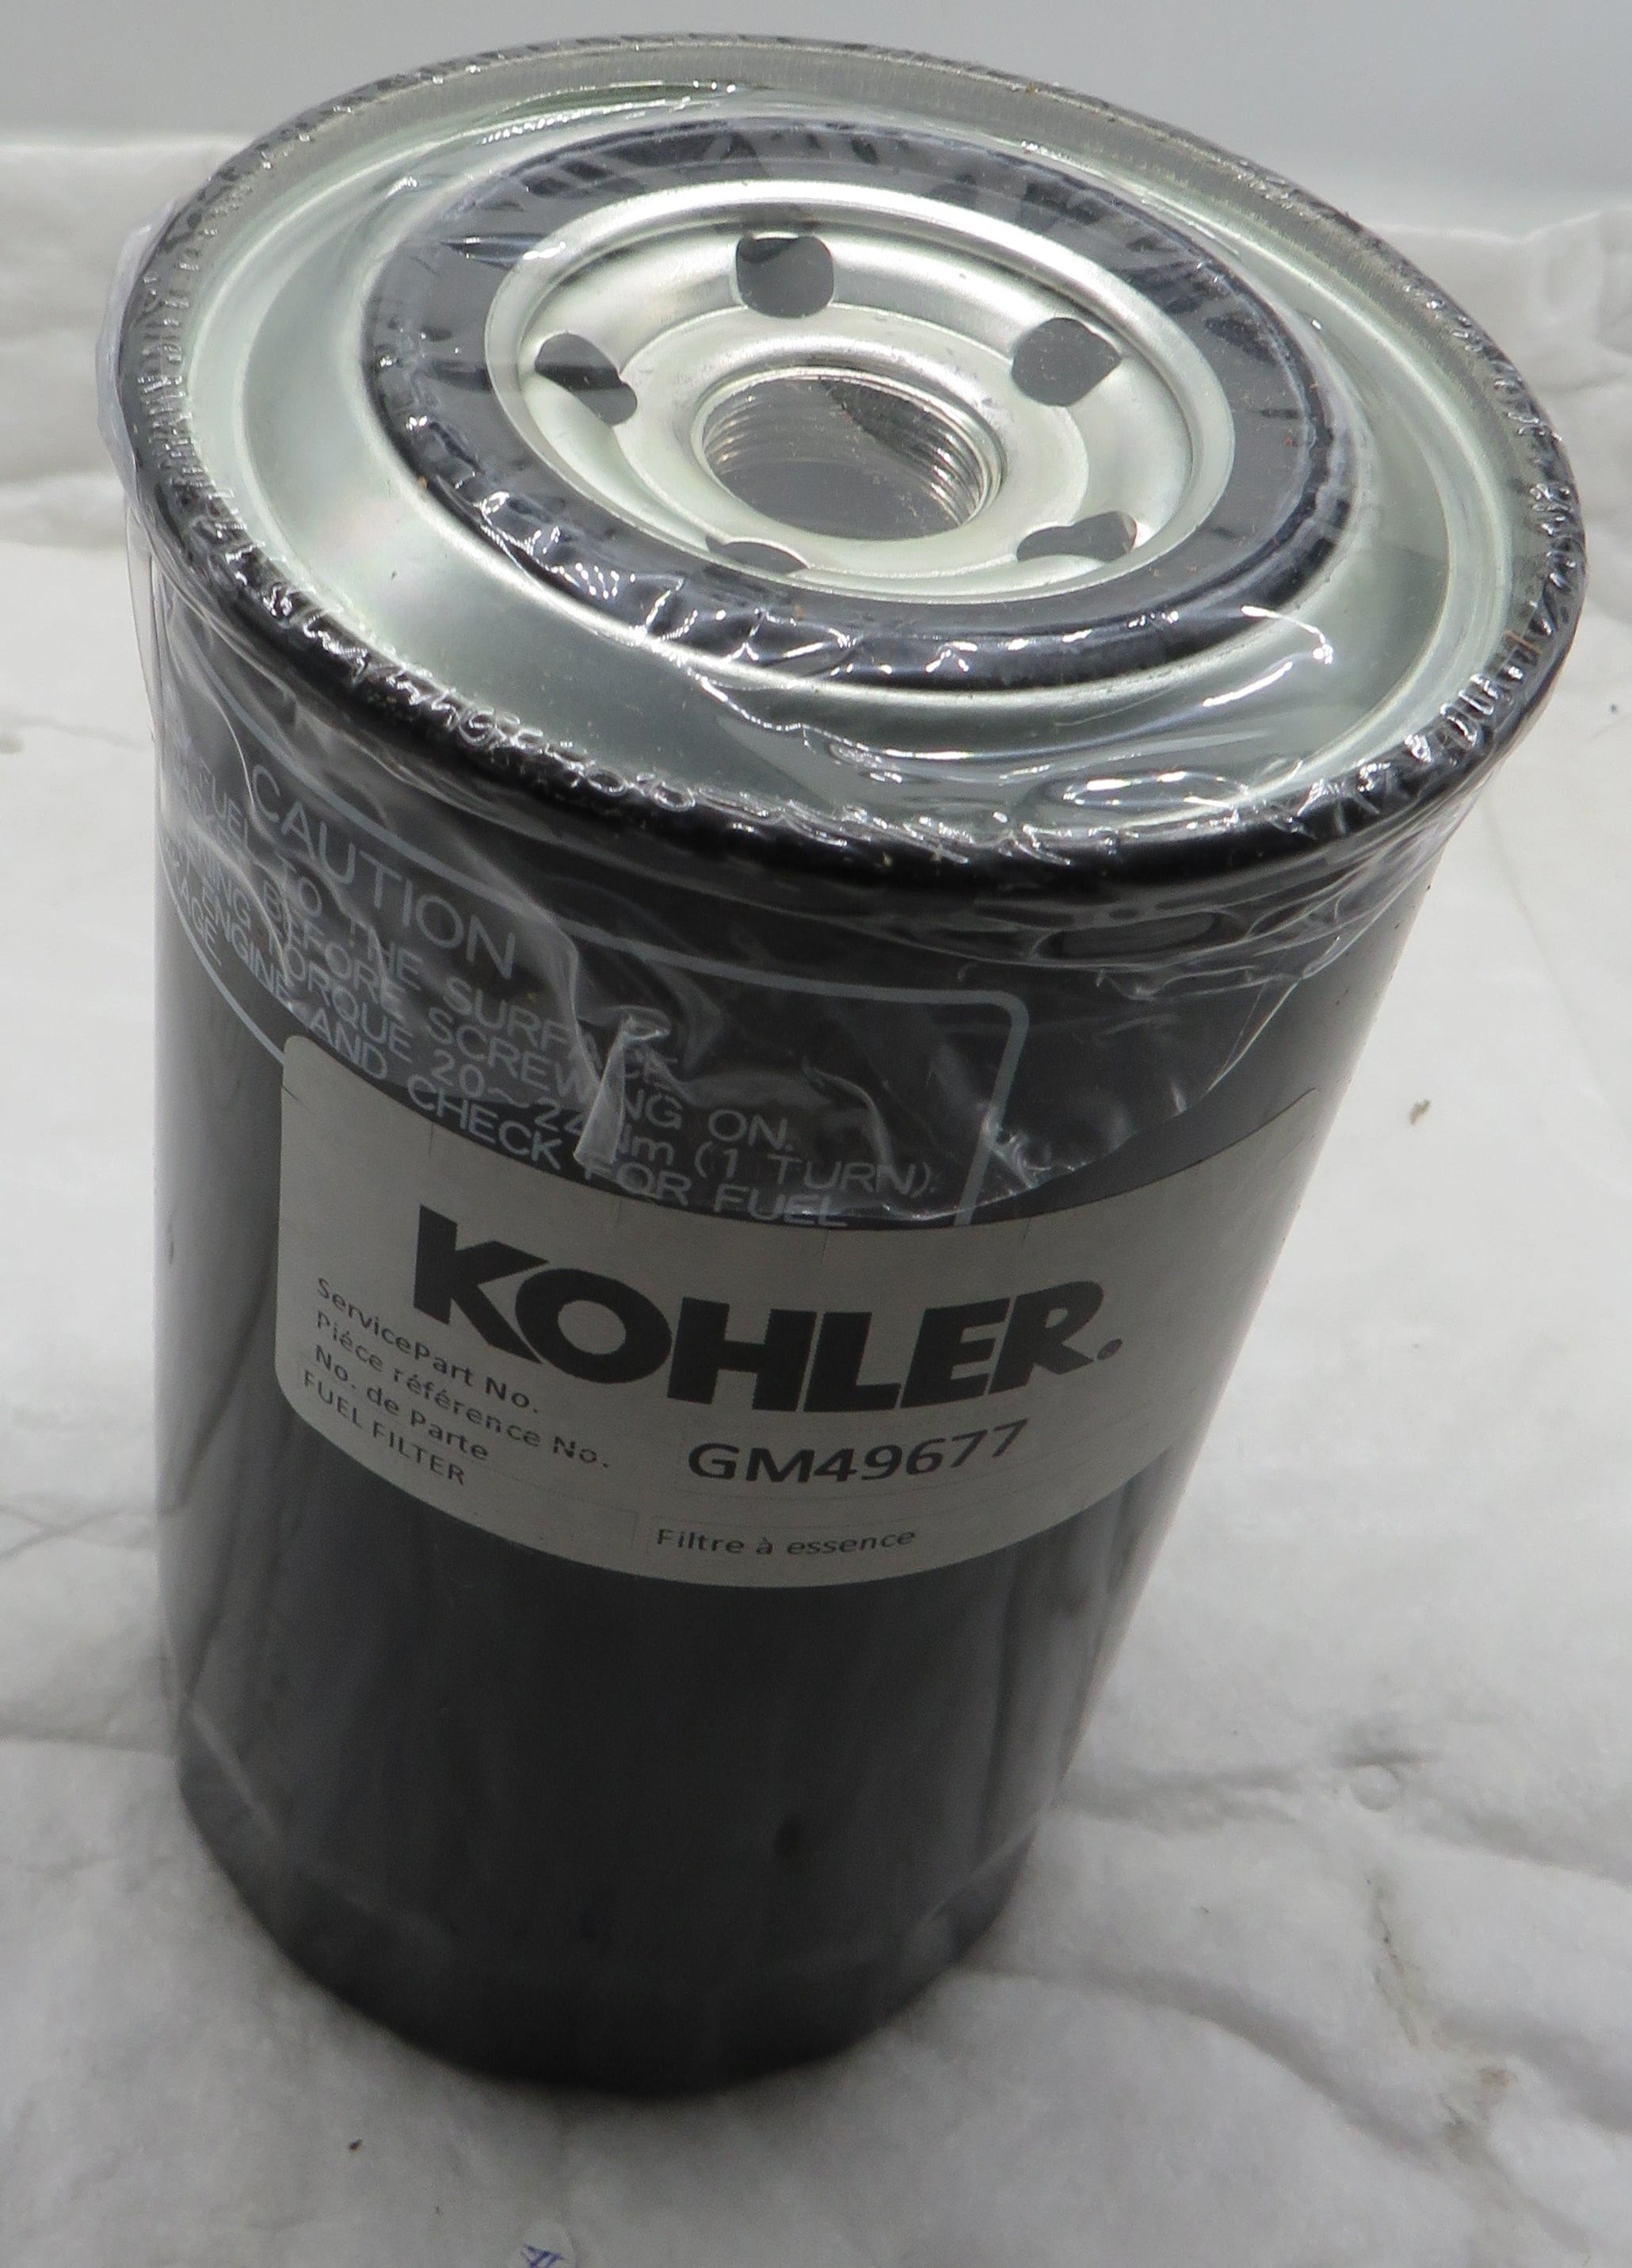 Kohler GM49677 Kohler Fuel Filter